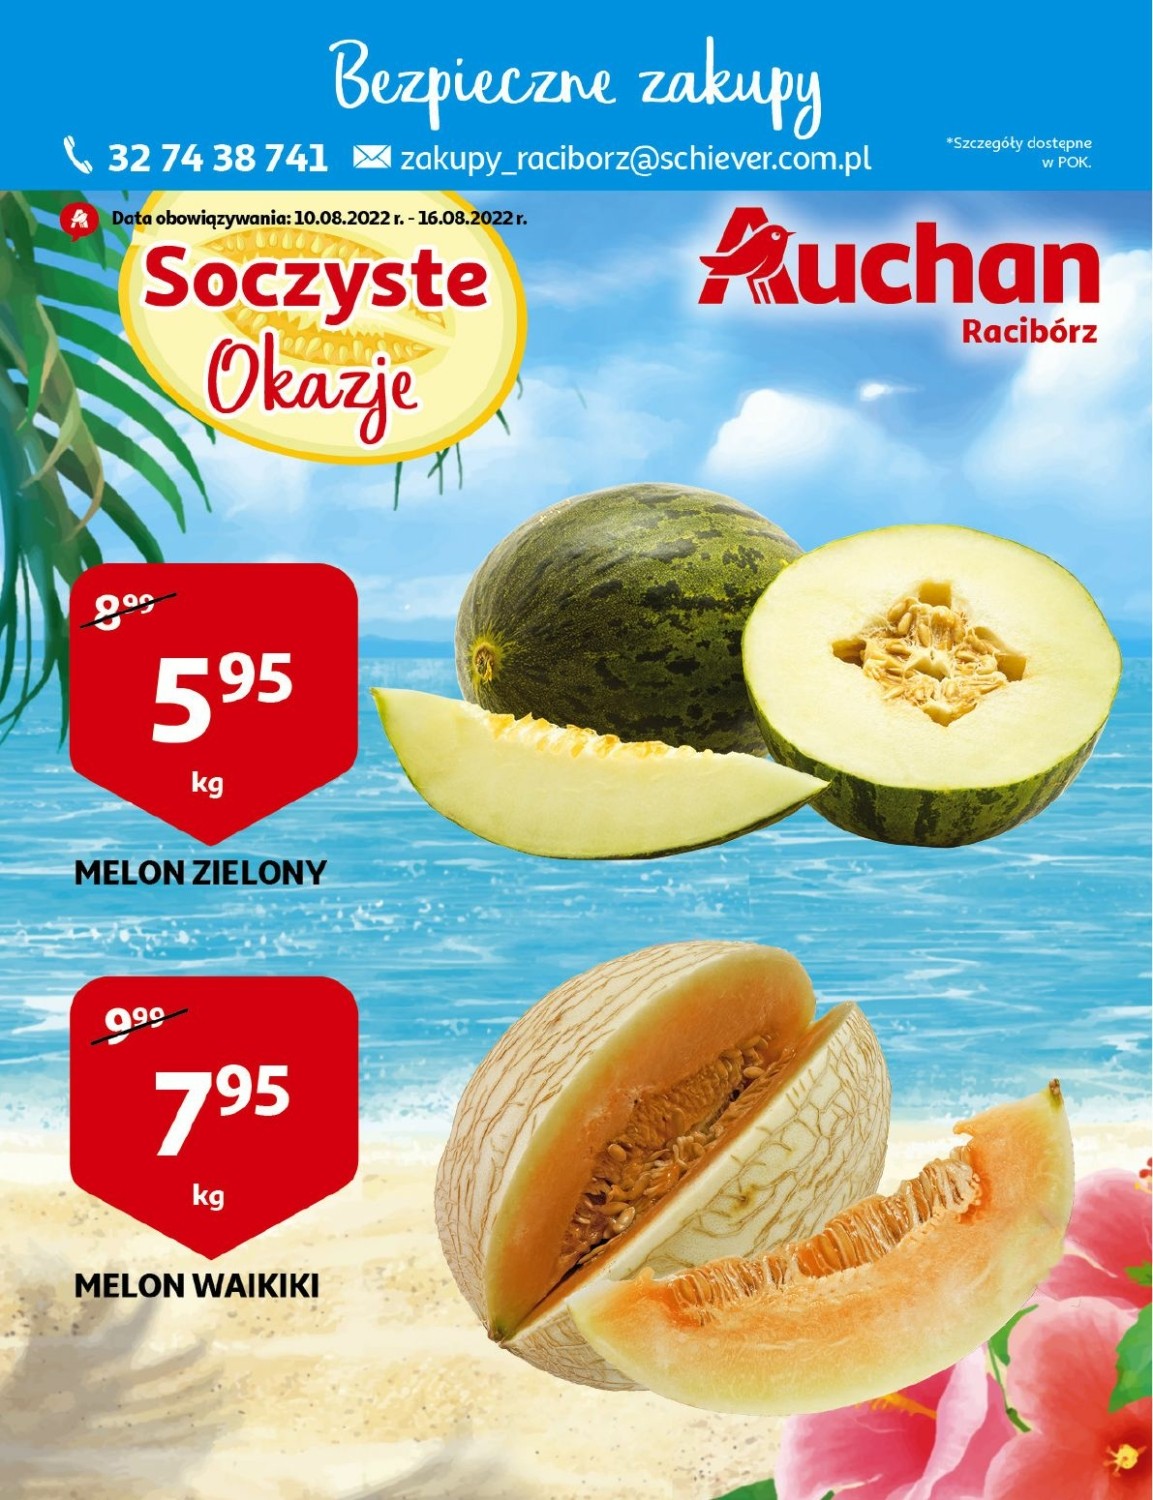 Gazetka Auchan od 10.08.2022 do 16.08.2022 - Racibórz